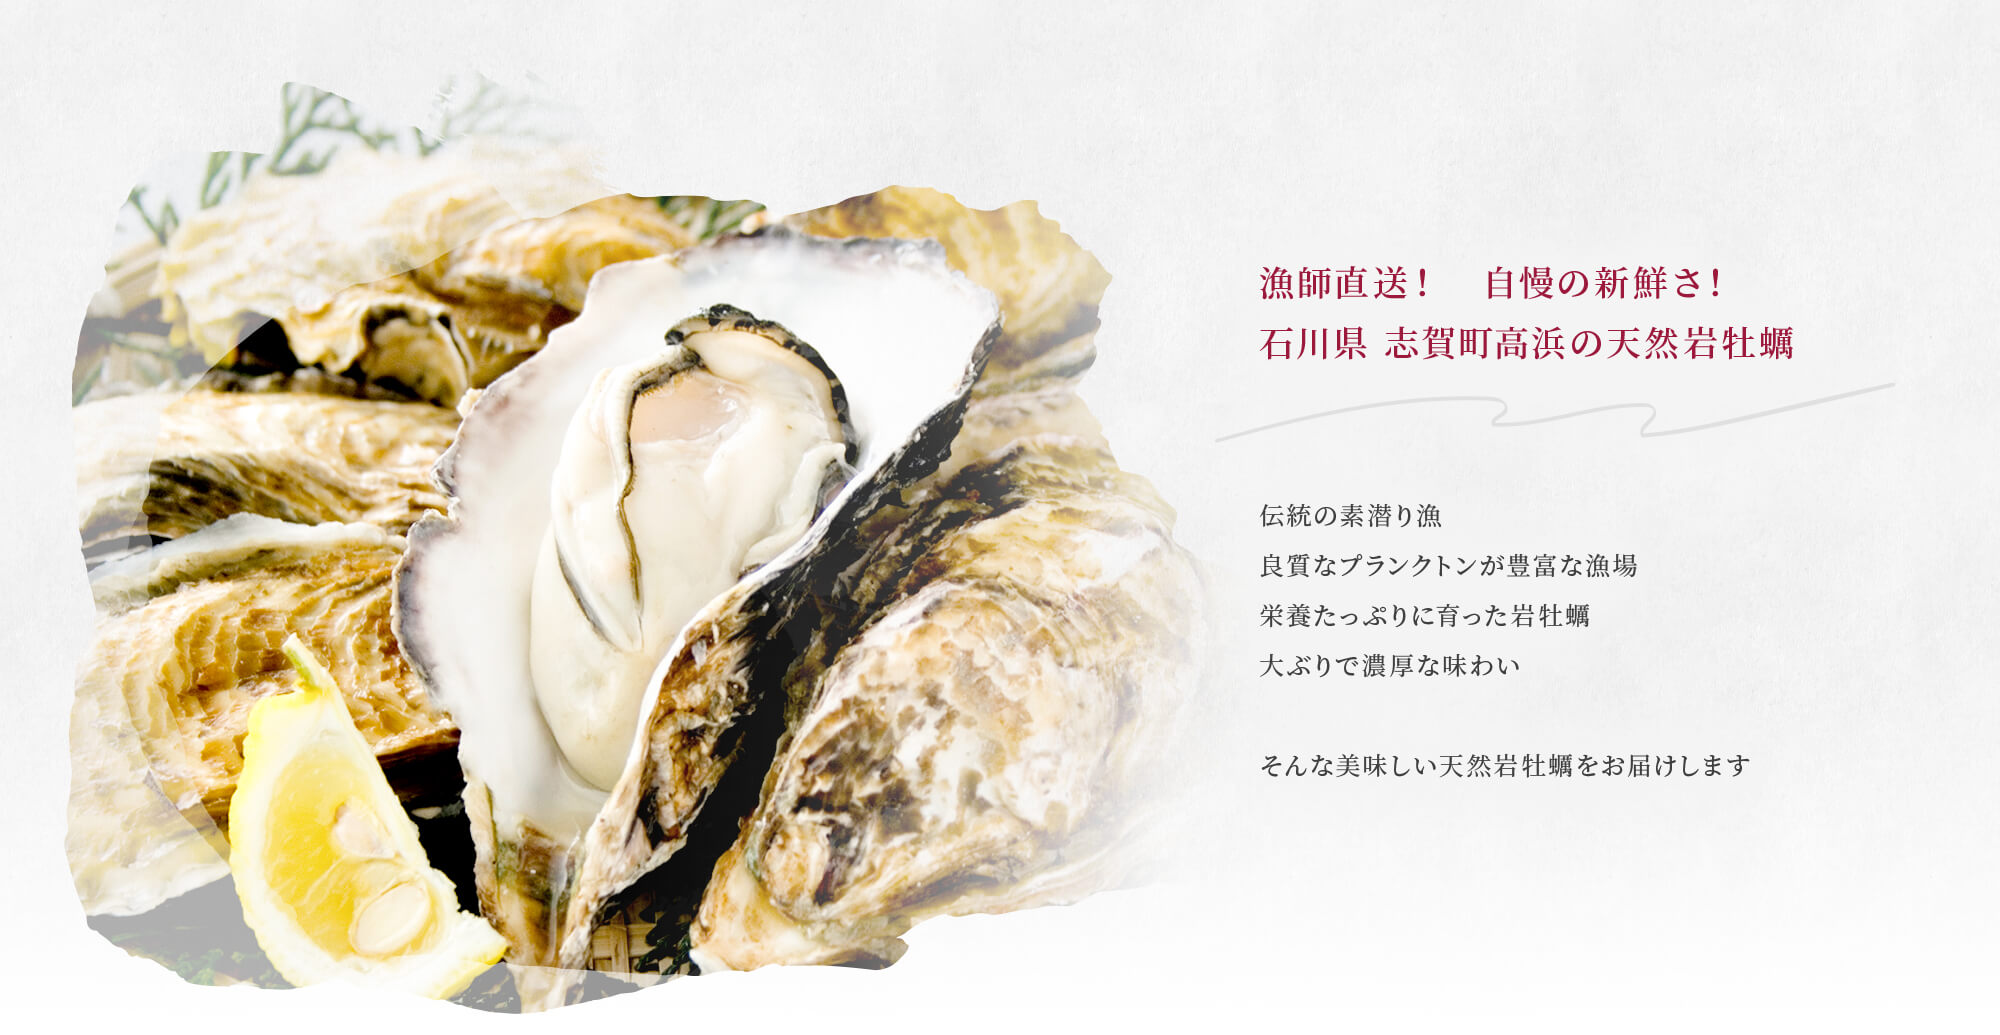 漁師直送！　自慢の新鮮さ！ 石川県 志賀町高浜の天然岩牡蠣  伝統の素潜り漁 良質なプランクトンが豊富な漁場 栄養たっぷりに育った岩牡蠣 大ぶりで濃厚な味わい  そんな美味しい天然岩牡蠣をお届けします